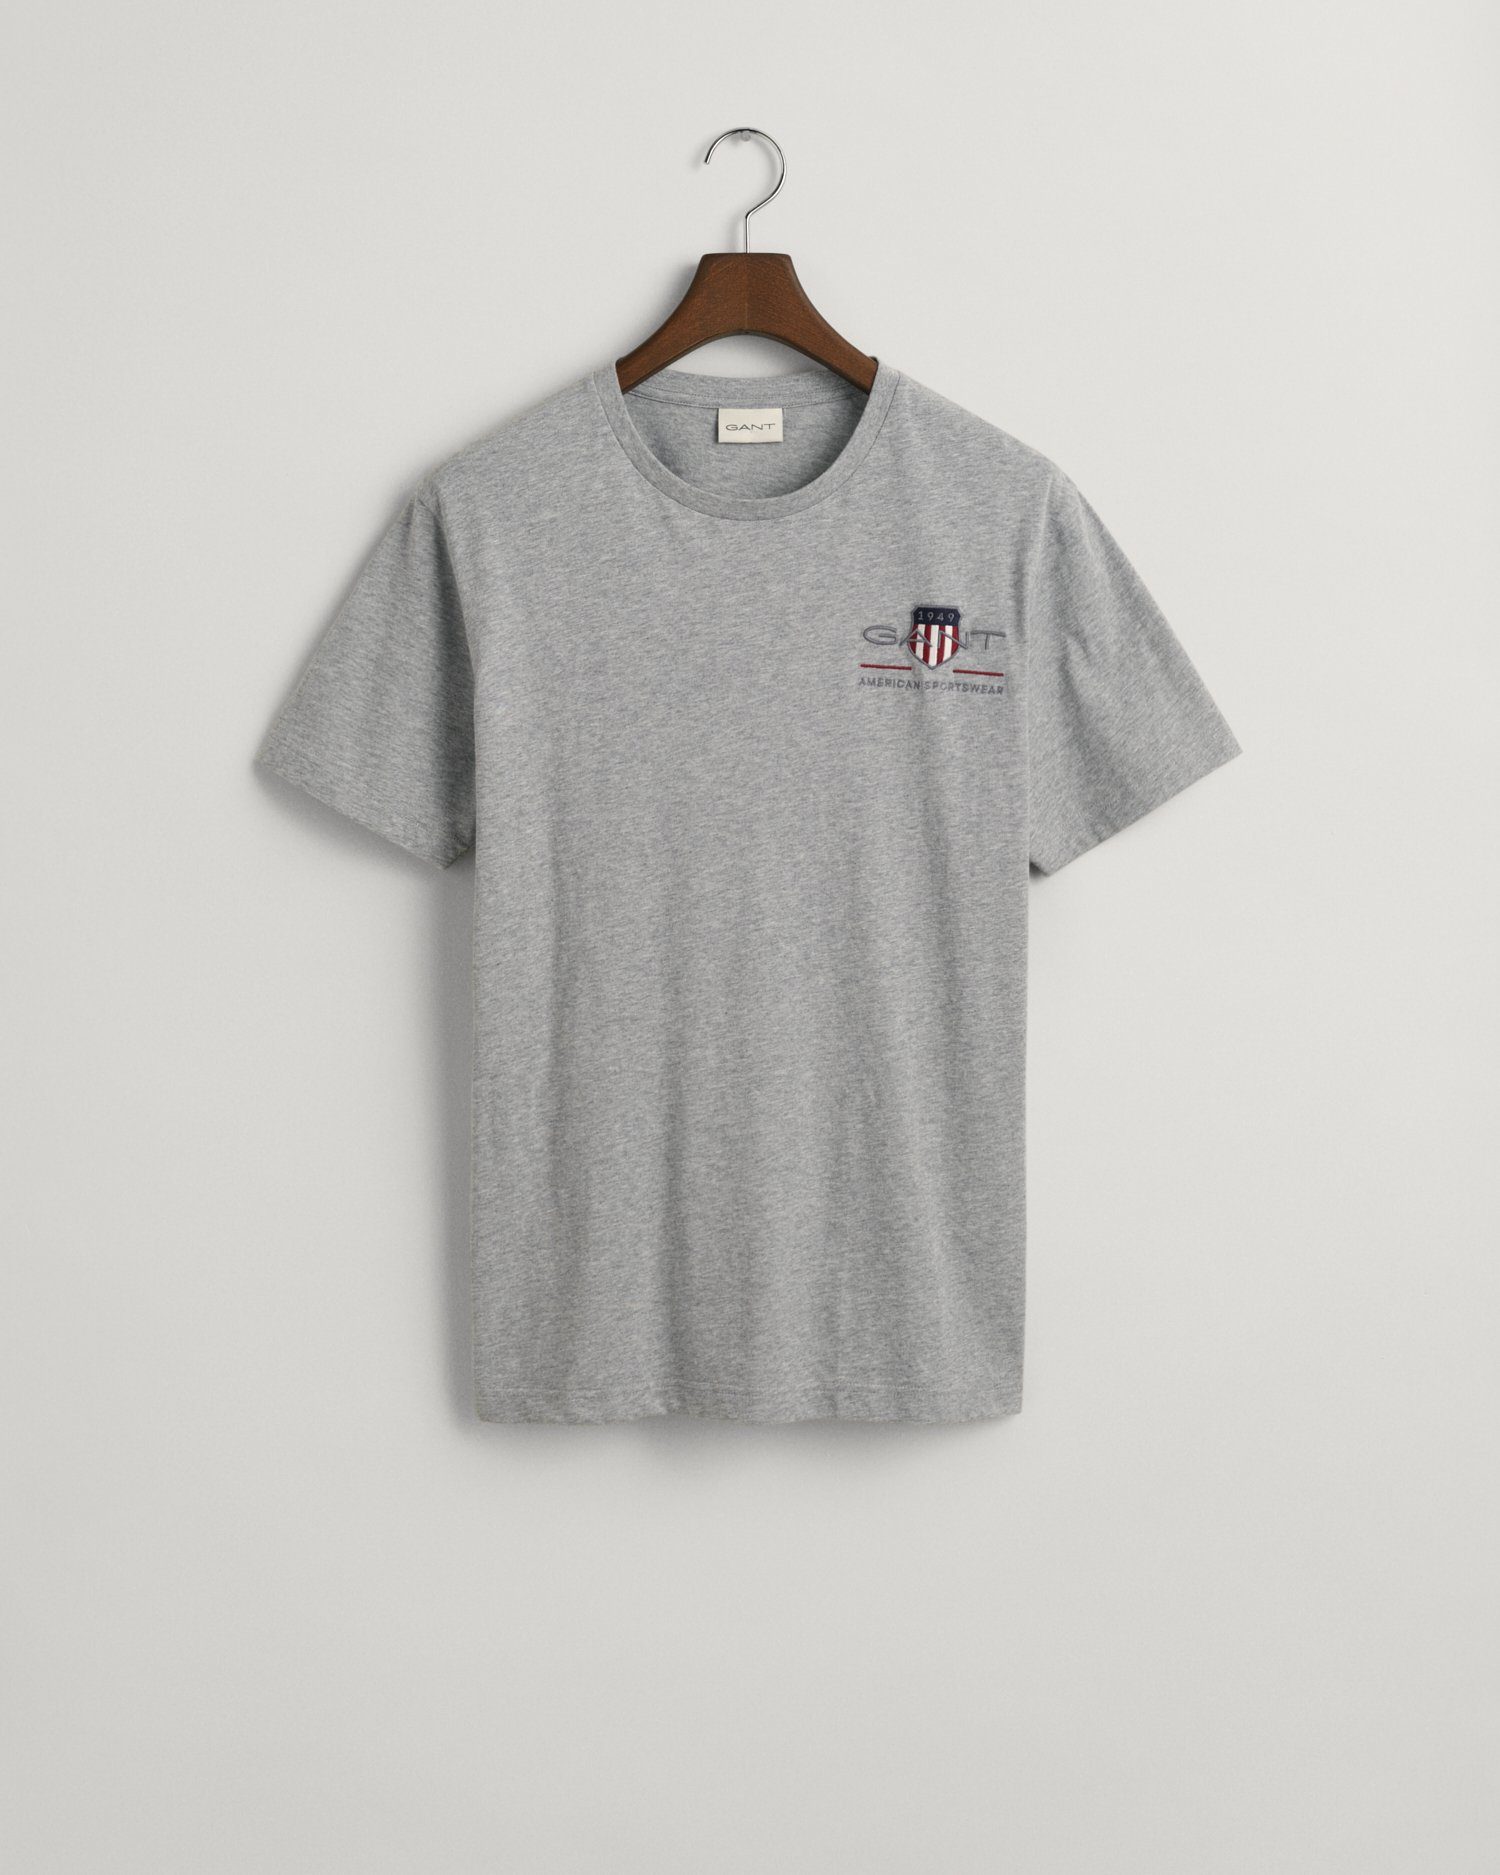 Archiv T-SHIRT melange T-Shirt inspiriert Gant SHIELD aus SS den grey dem 1980er-Jahren von REG EMB ARCHIVE